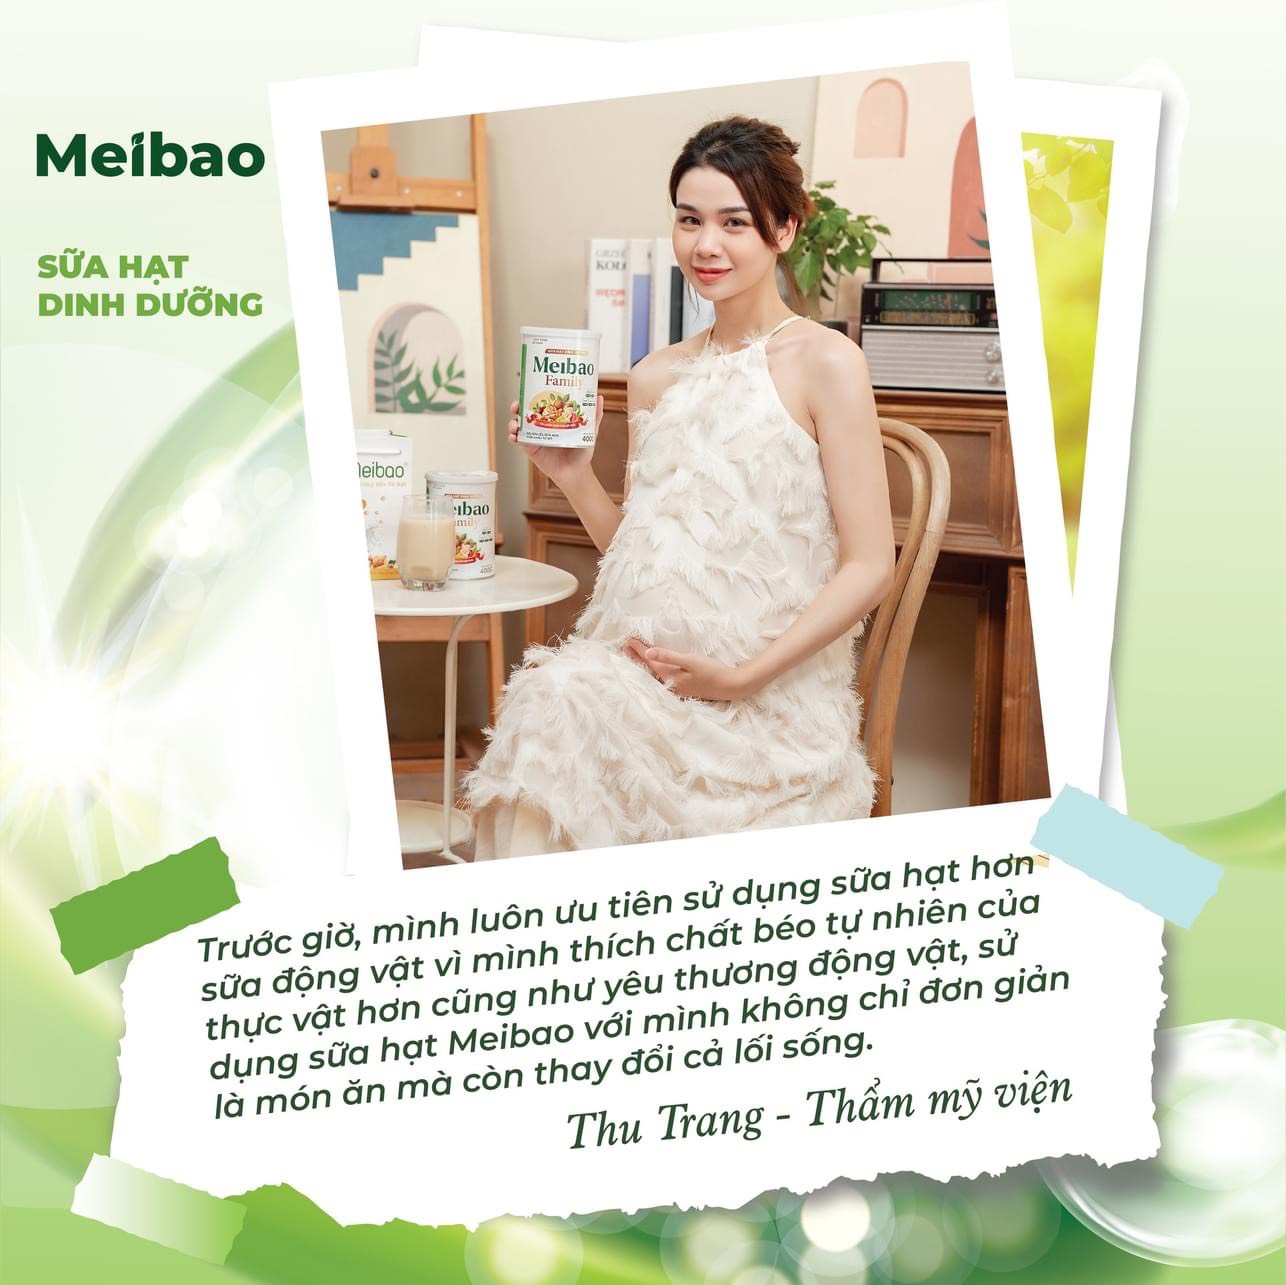 Sữa hạt dinh dưỡng Meibao - Family